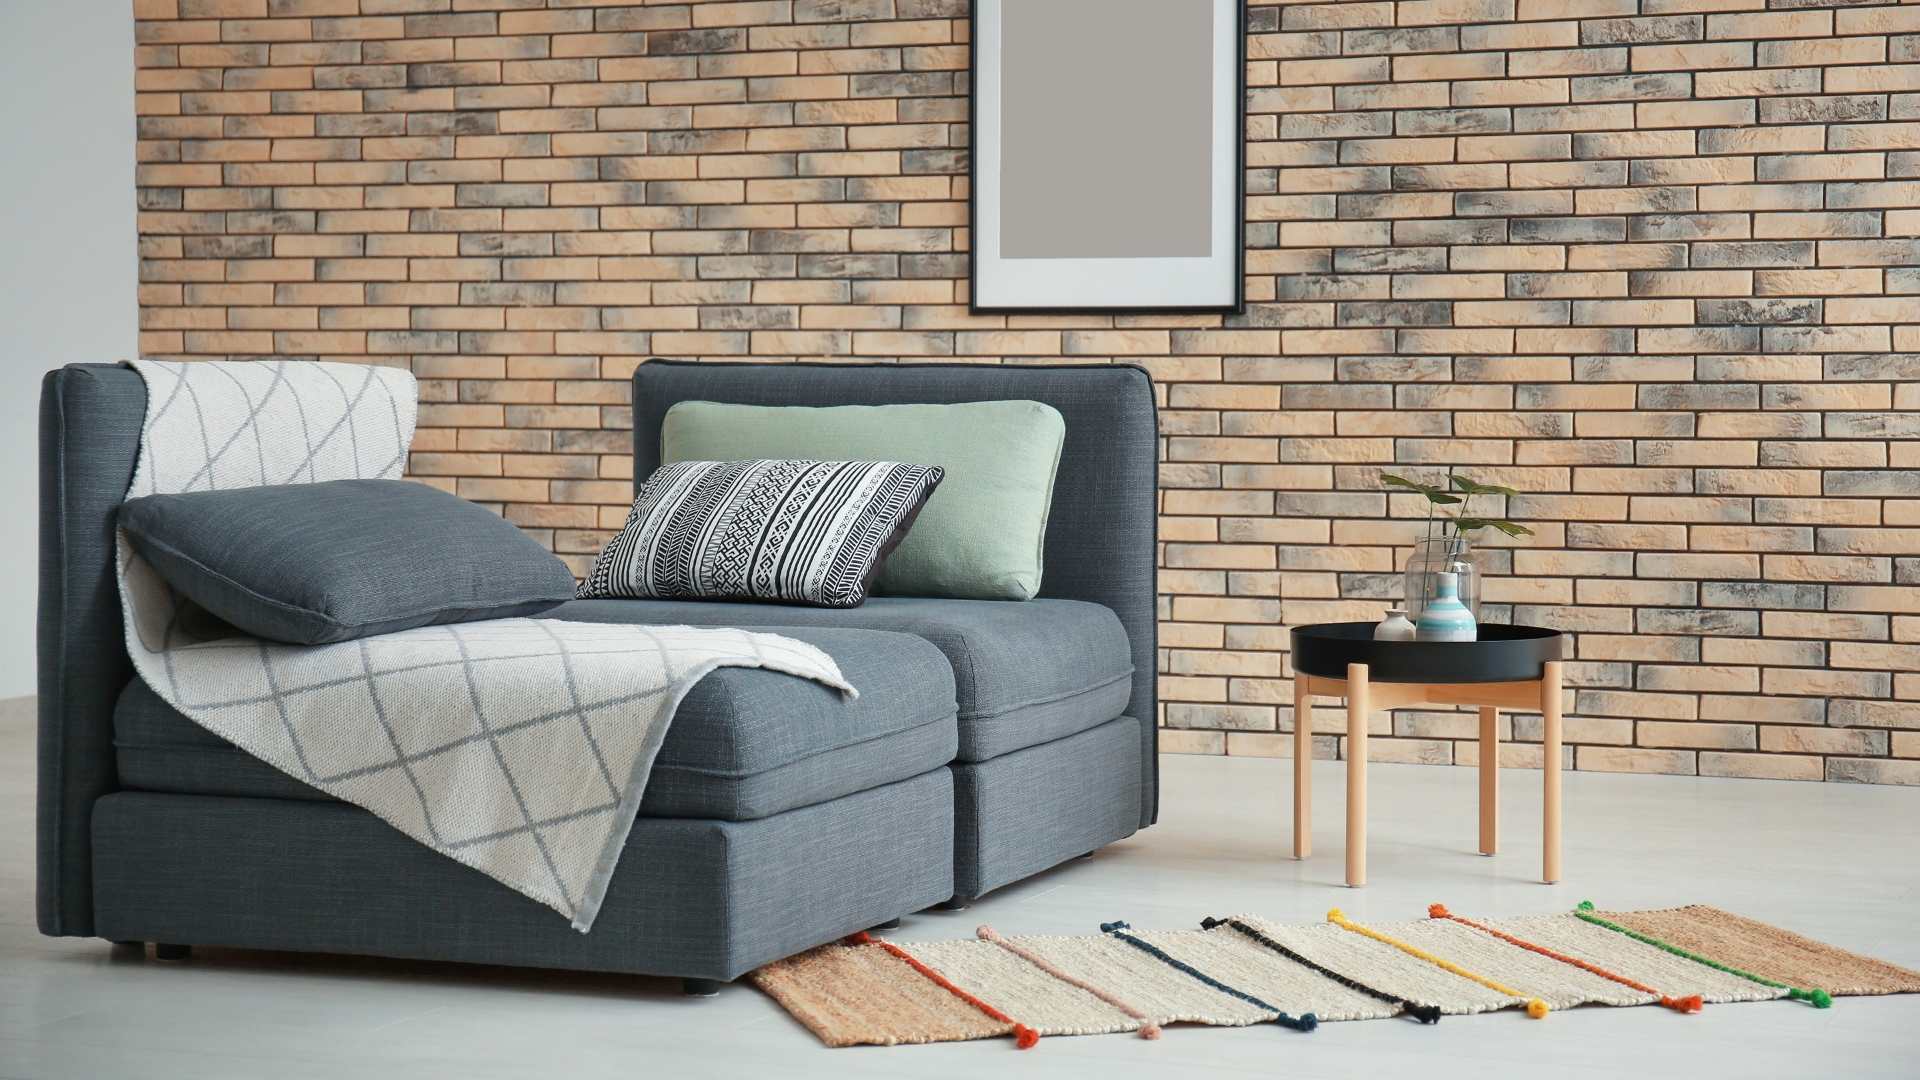 Modular sofas UK